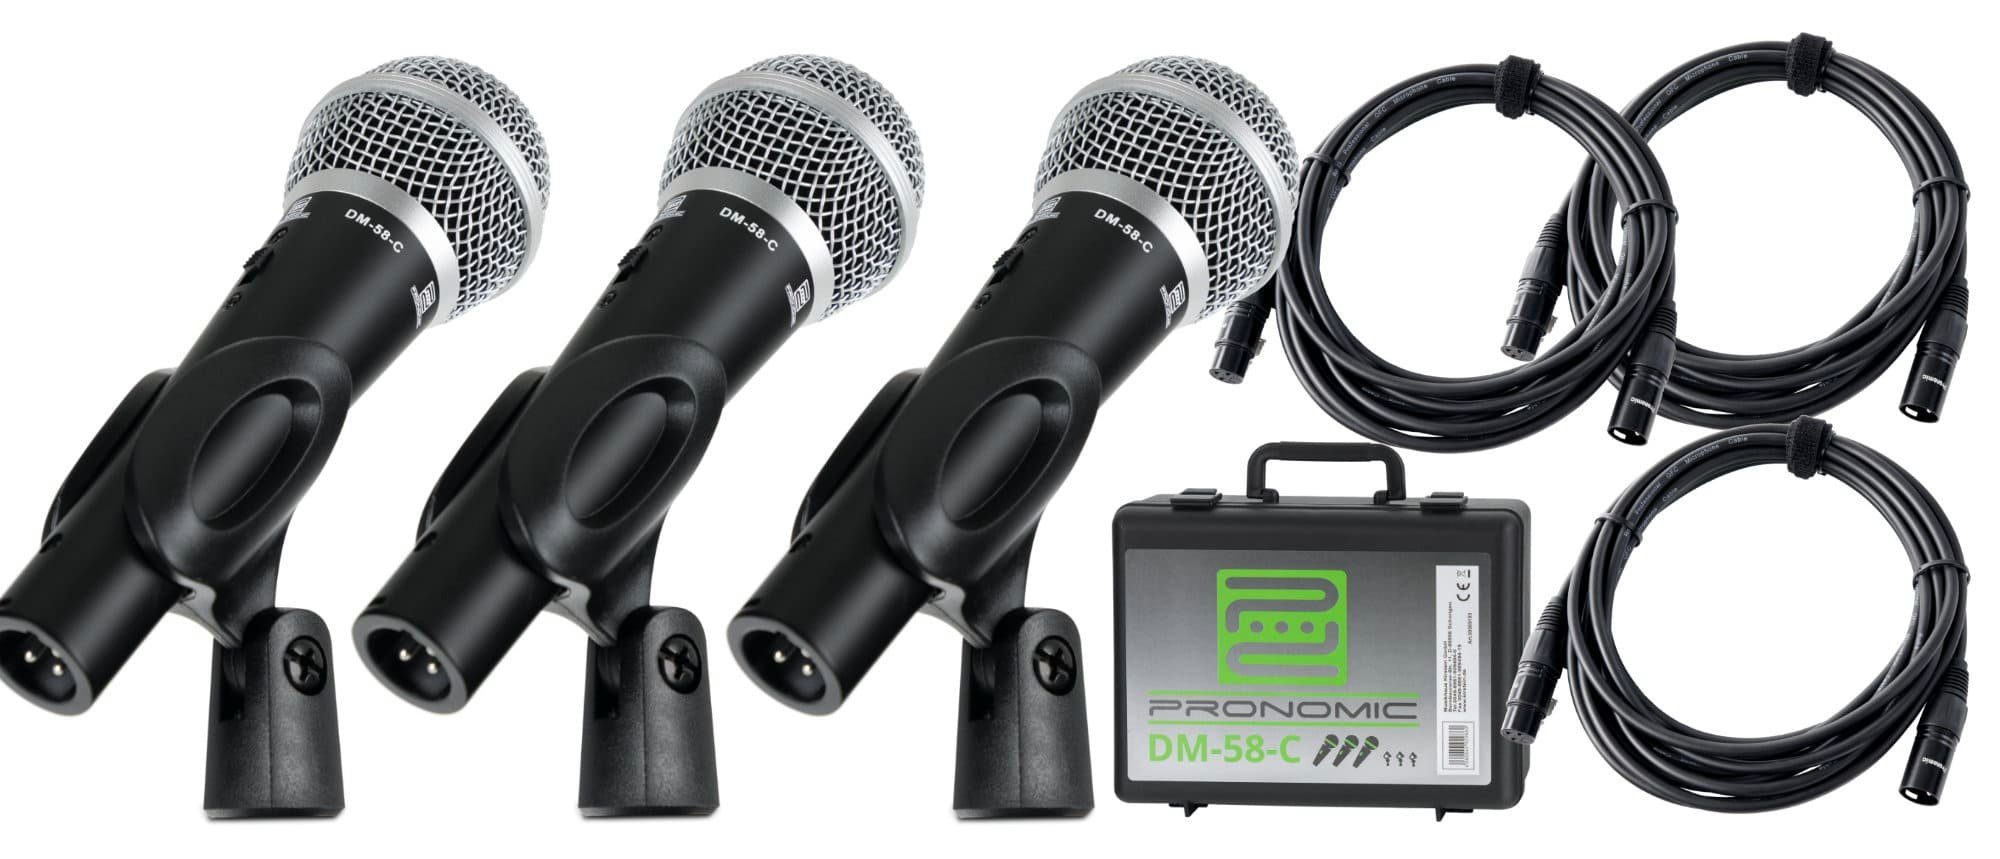 Pronomic Mikrofon DM-58-C Vocal dynamische Мікрофони mit Nieren-Charakteristik (3er Set im Koffer, 13-tlg), Ein-/Aus-Schalter - inkl. Mikrofonklemmen und XLR-Kabel 5 m